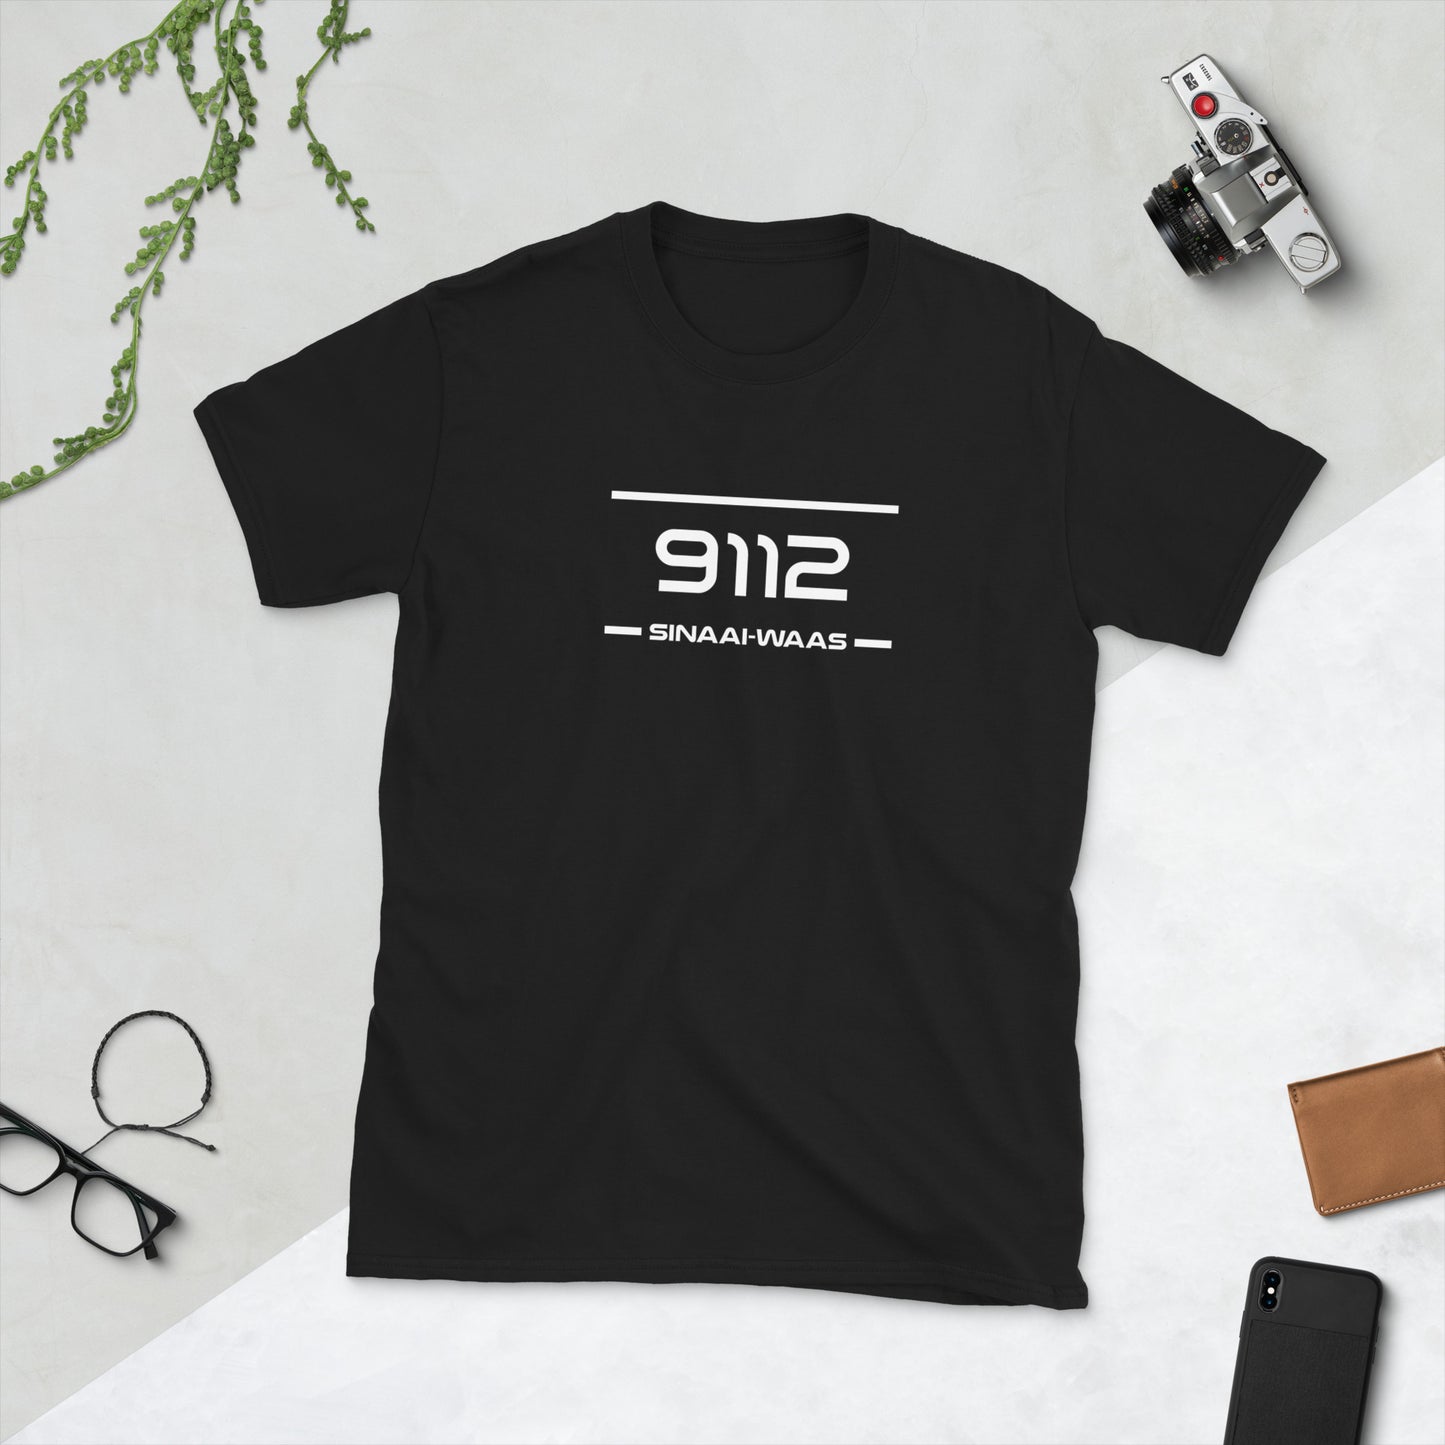 T-Shirt - 9112 - Sinaai-Waas